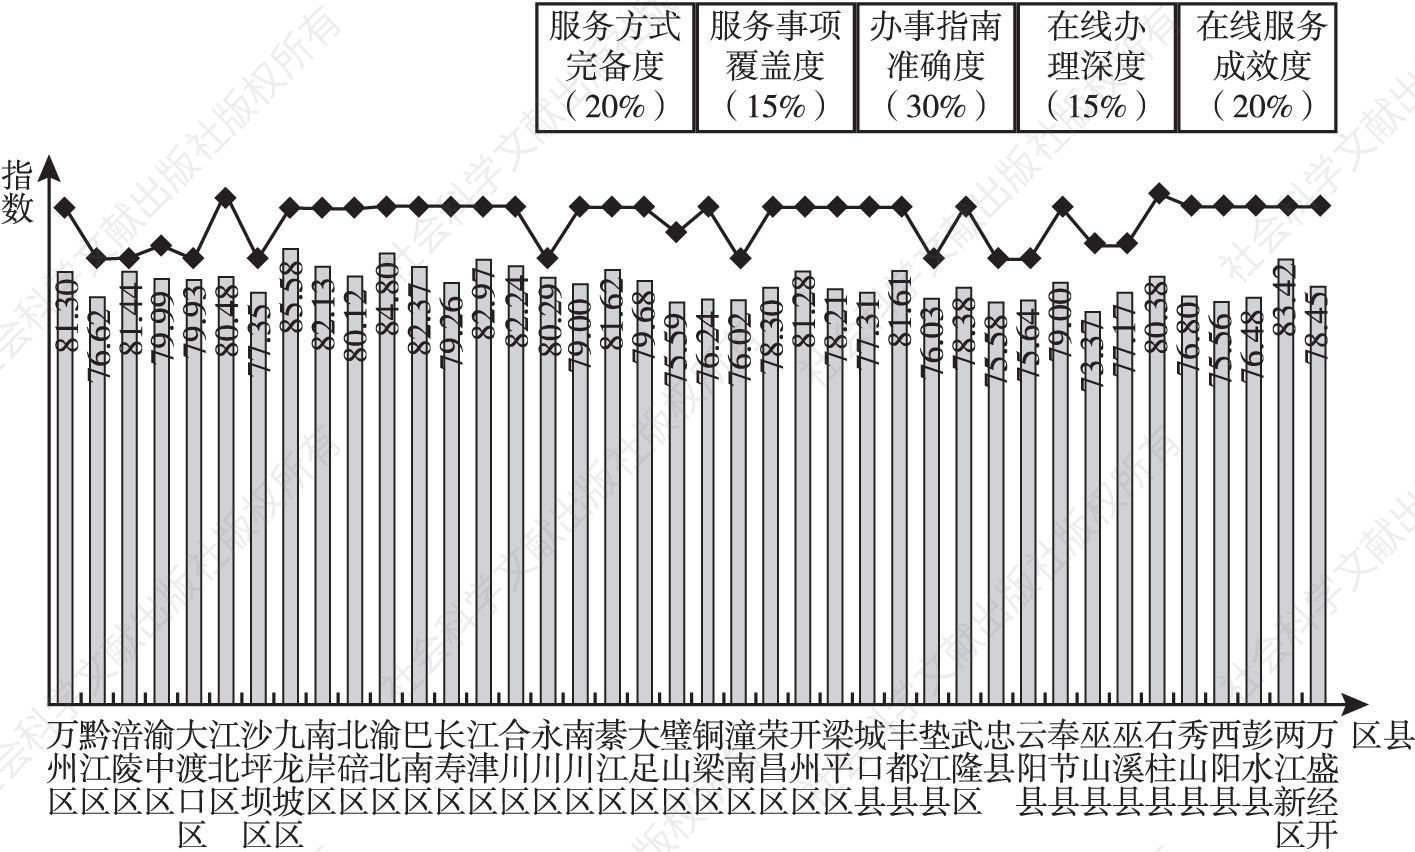 图10 重庆市各区县政务服务效能指数